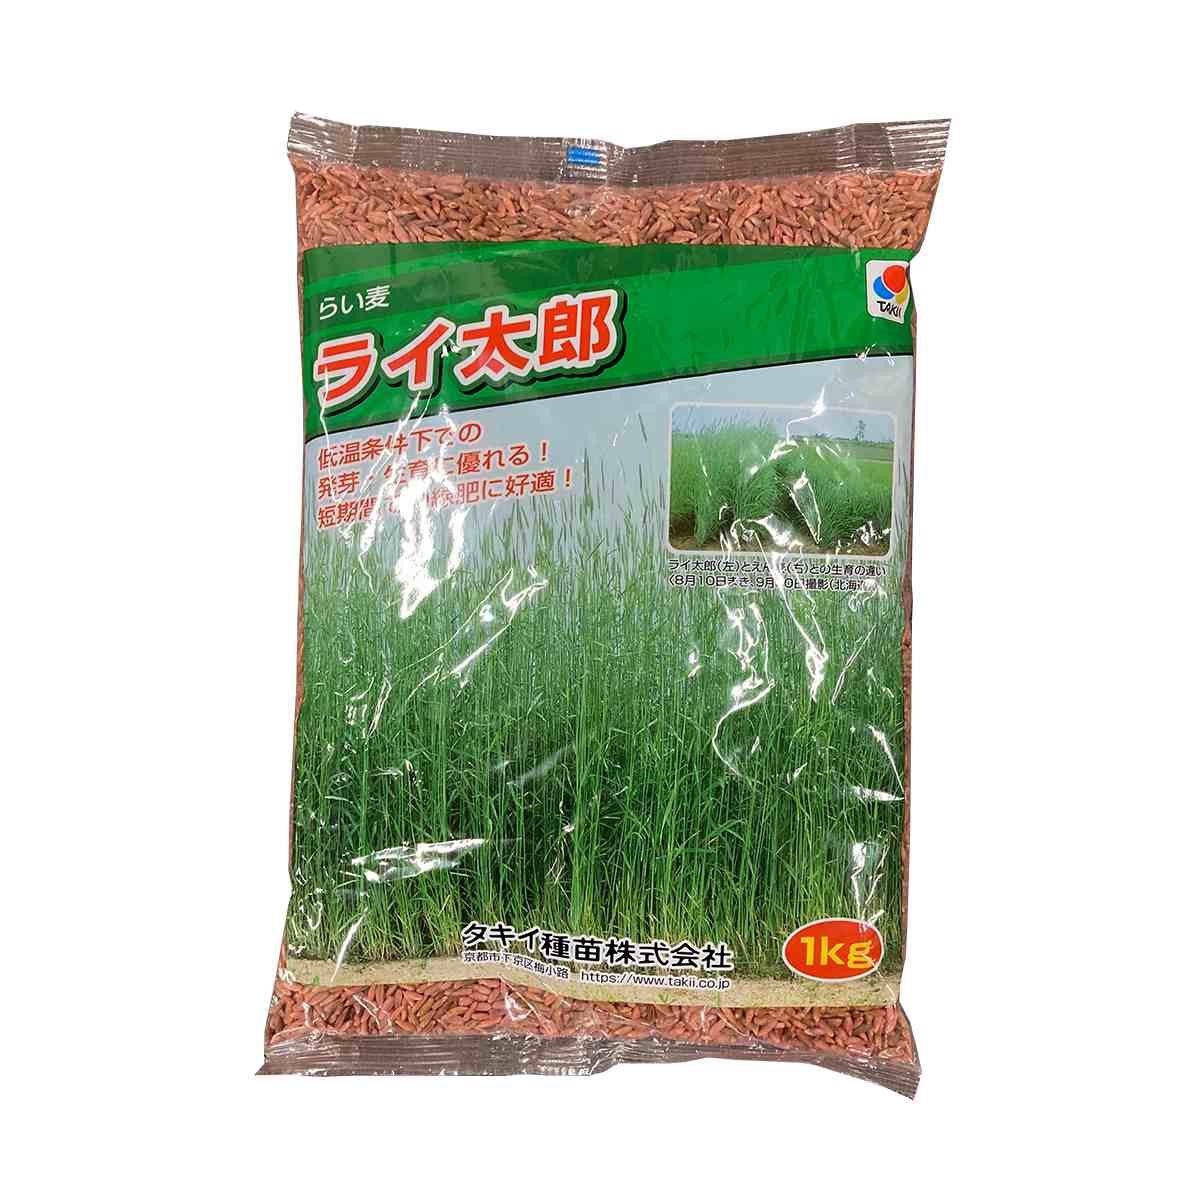 超極早生ライ麦 ライ太郎 1kg タキイ種苗 タネのタキイ 種子 緑肥 代金引換不可 送料無料